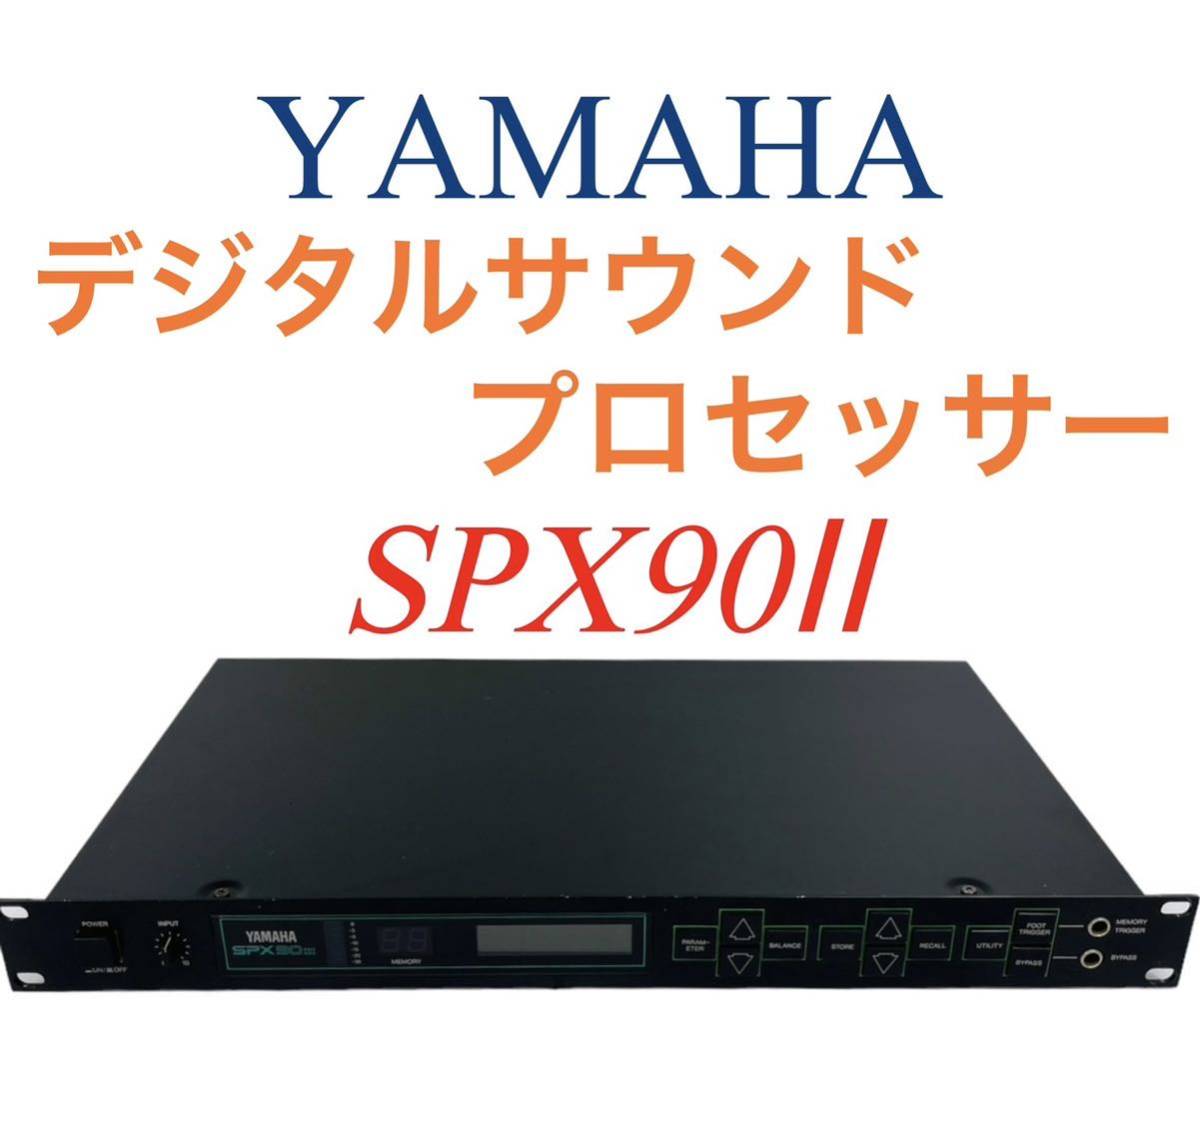 YAMAHA ヤマハ デジタルサウンドプロセッサー SPX90Ⅱ-